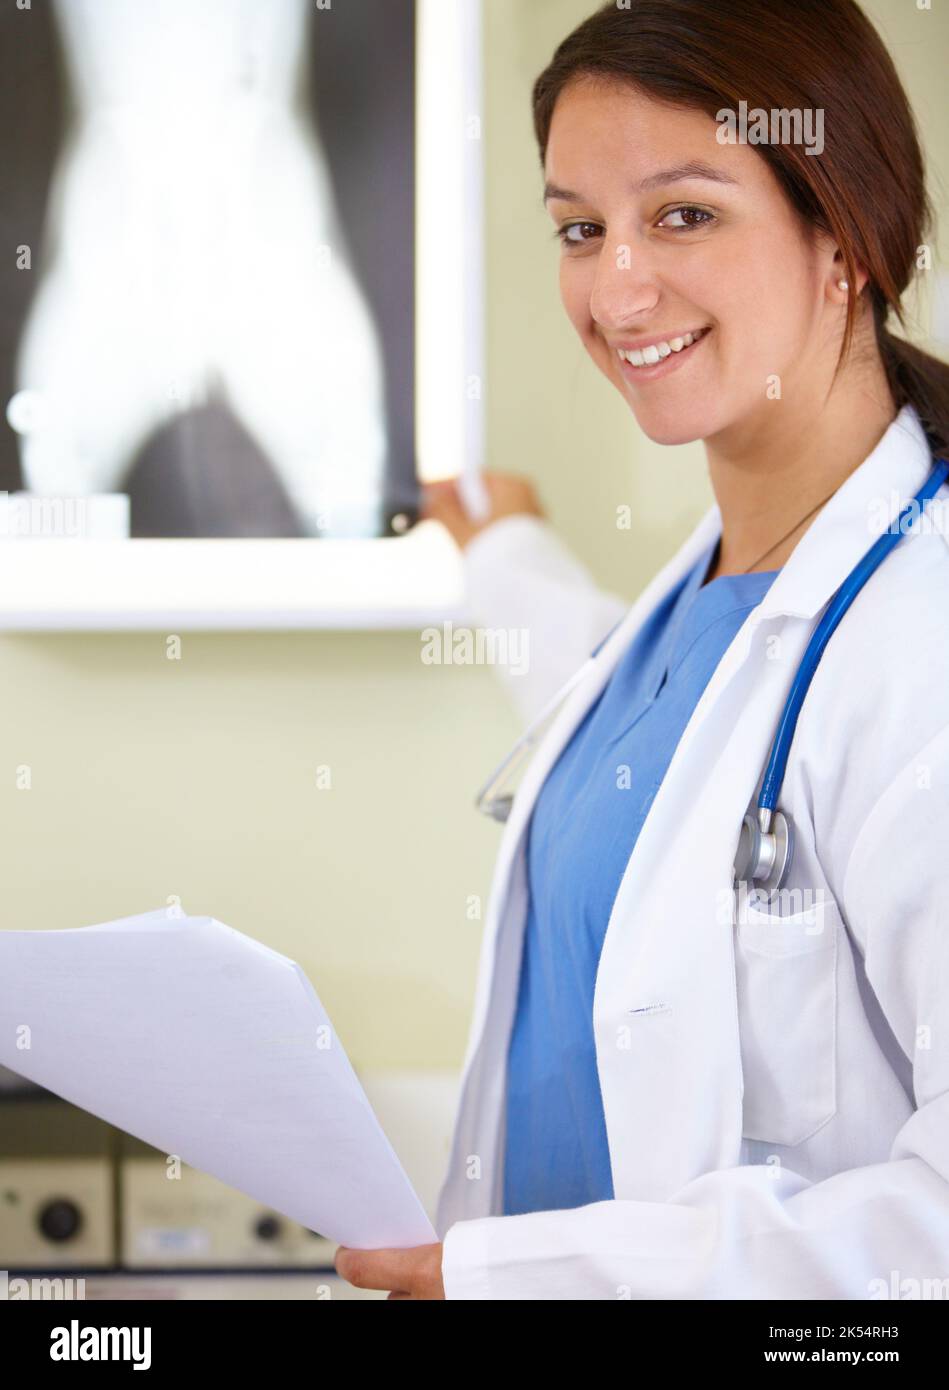 Indicare la soluzione al problema -raggi X. Ritratto di una giovane donna nella professione medica che indica una radiografia. Foto Stock